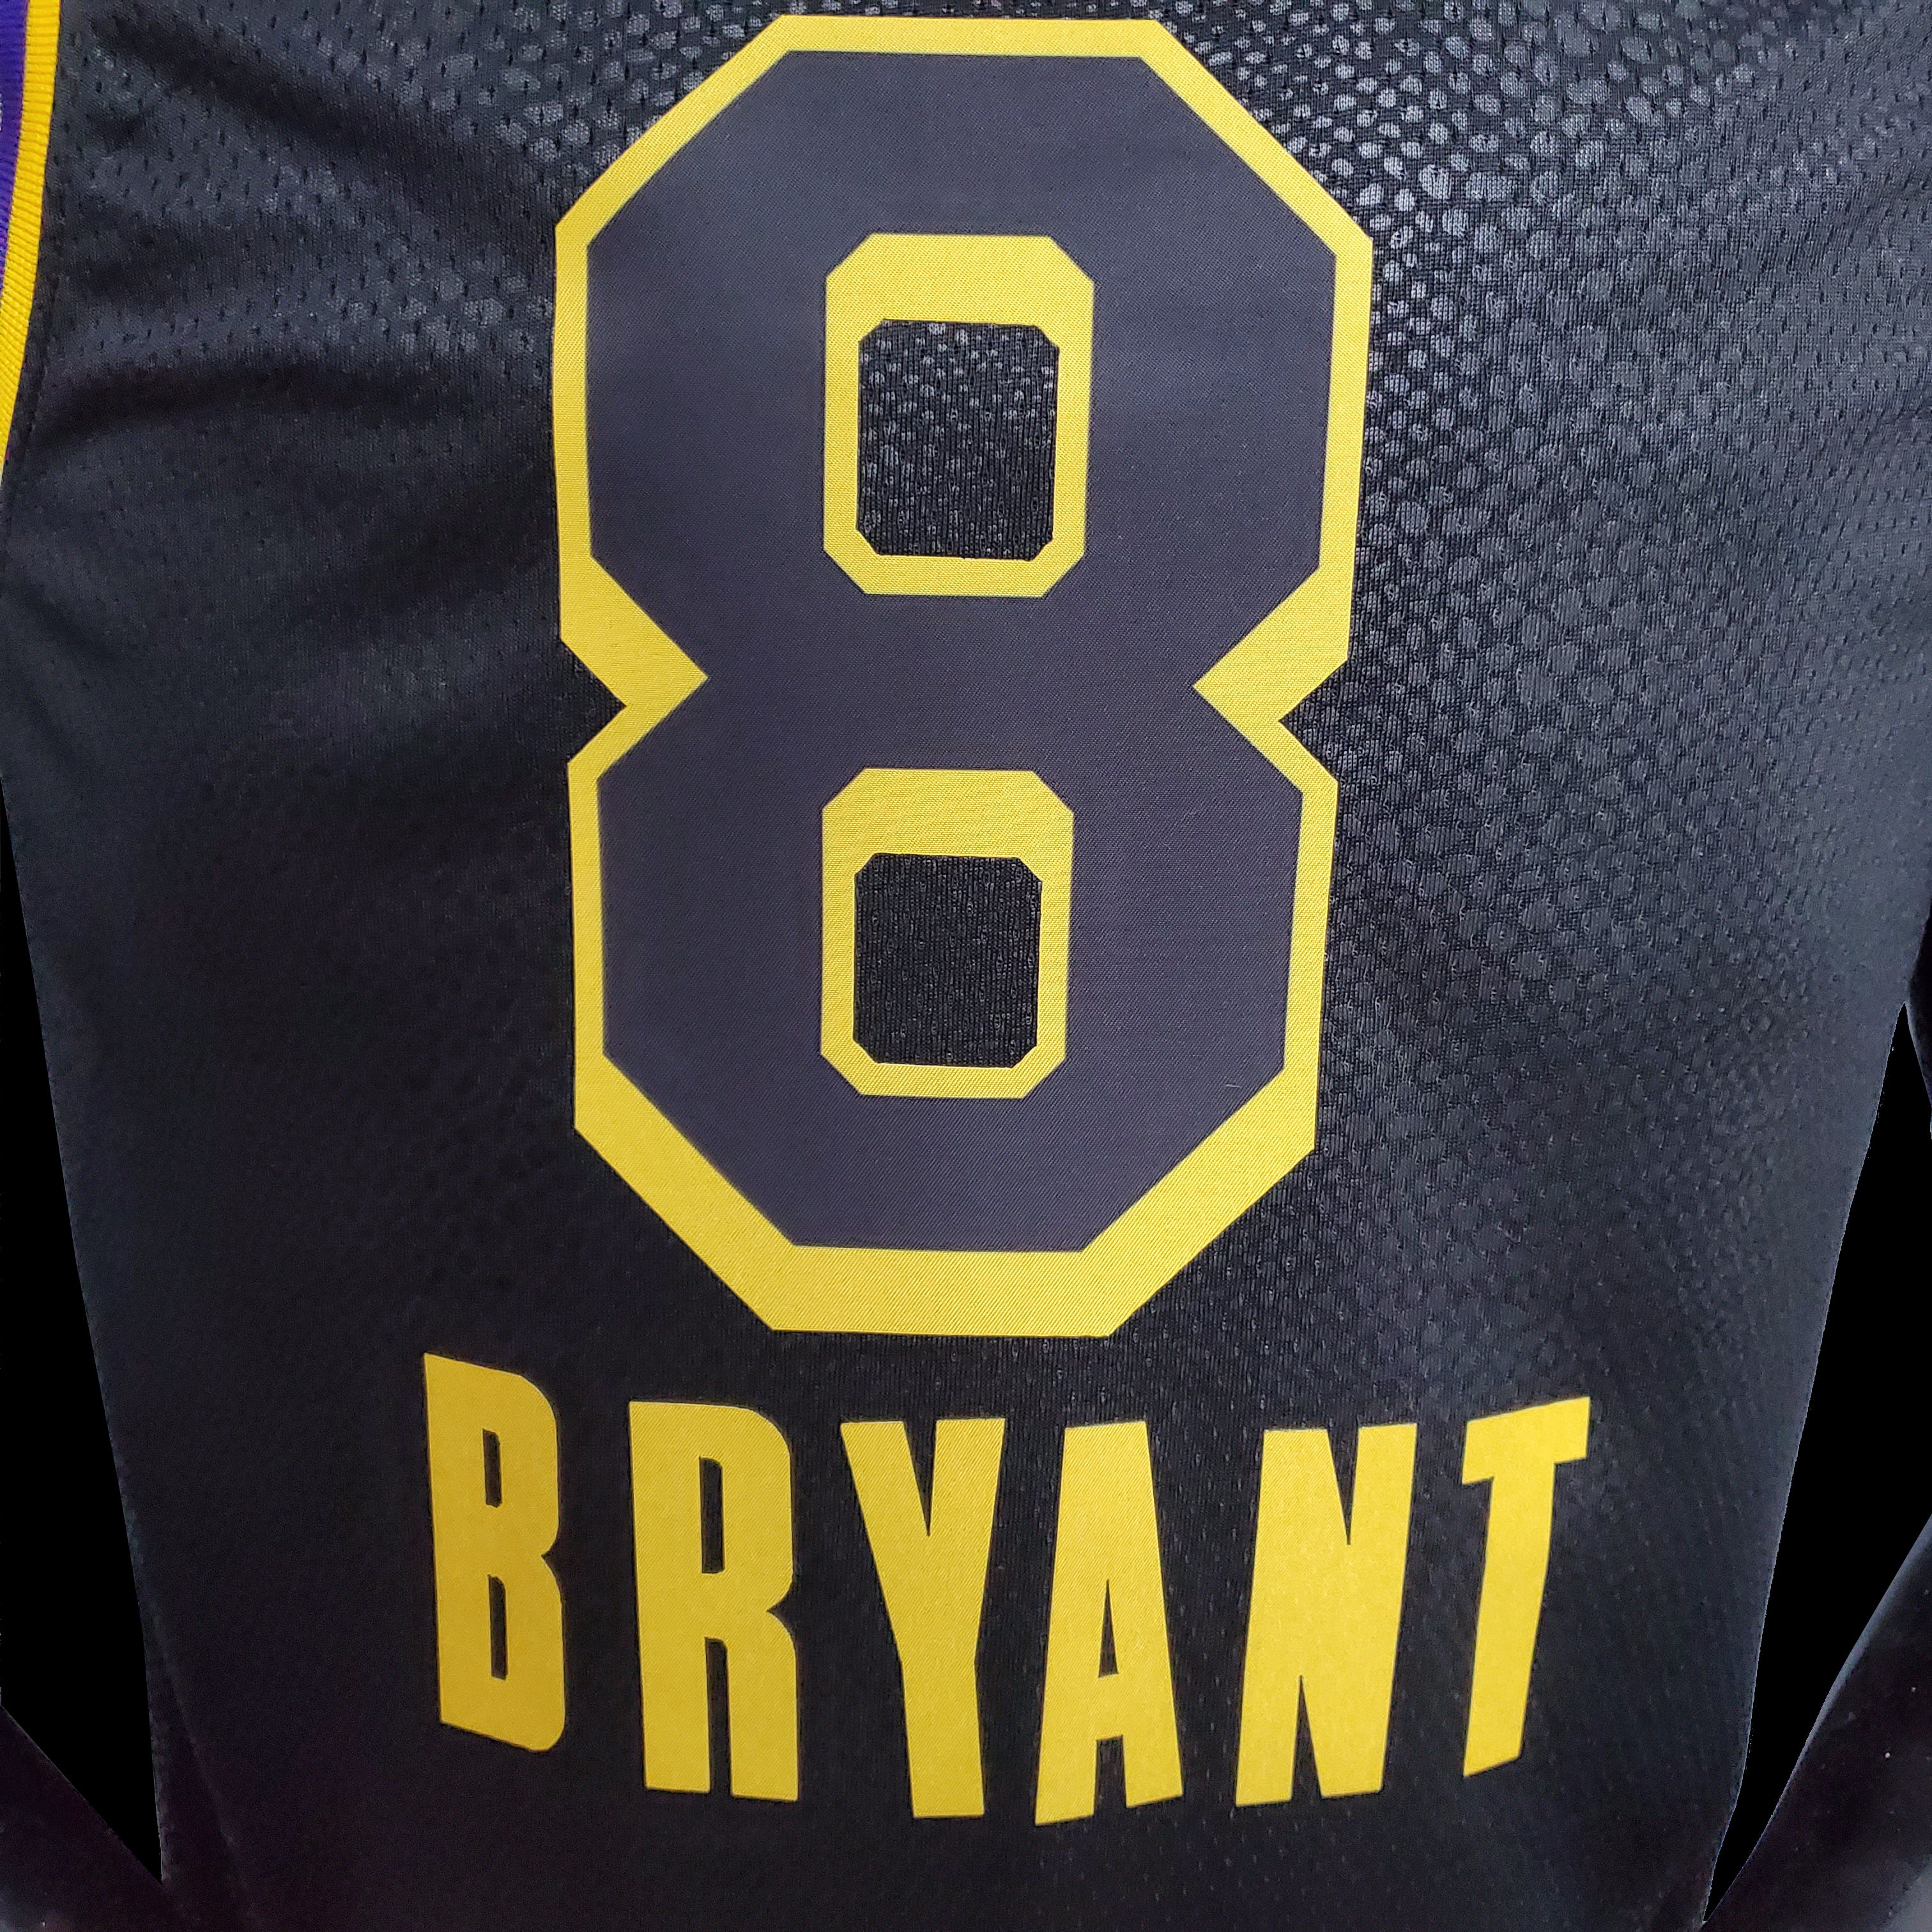 Men's Jerseys Kobe Bryant #24#8 L.A. Lakers Basketball Fans vests